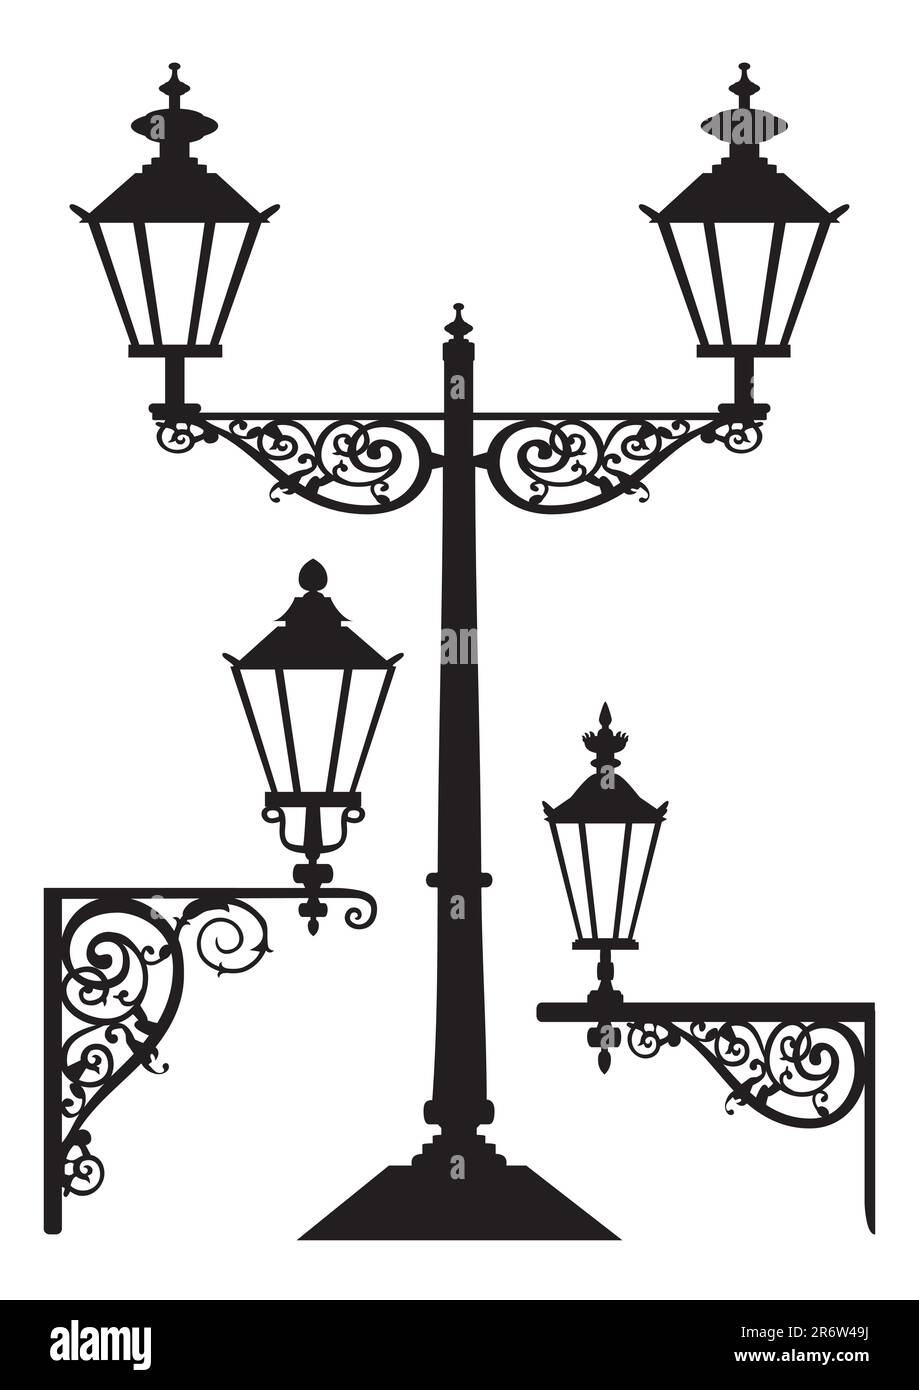 Illustration vectorielle d'une lampe de rue, graphique vectoriel entièrement évolutif inclus EPS v8. Illustration de Vecteur